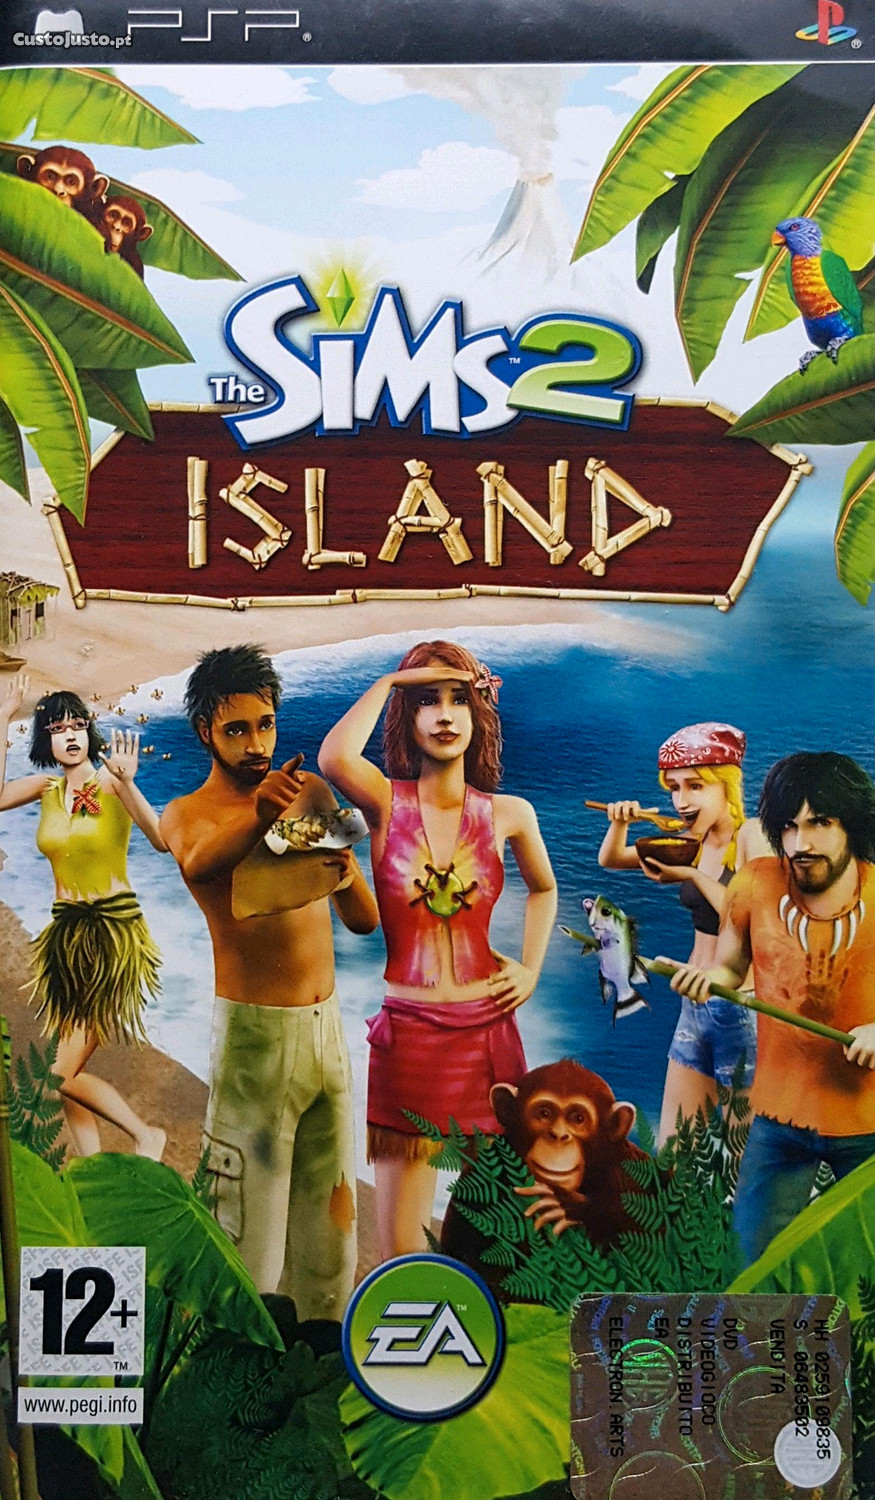 Jogue The Sims 2 gratuitamente